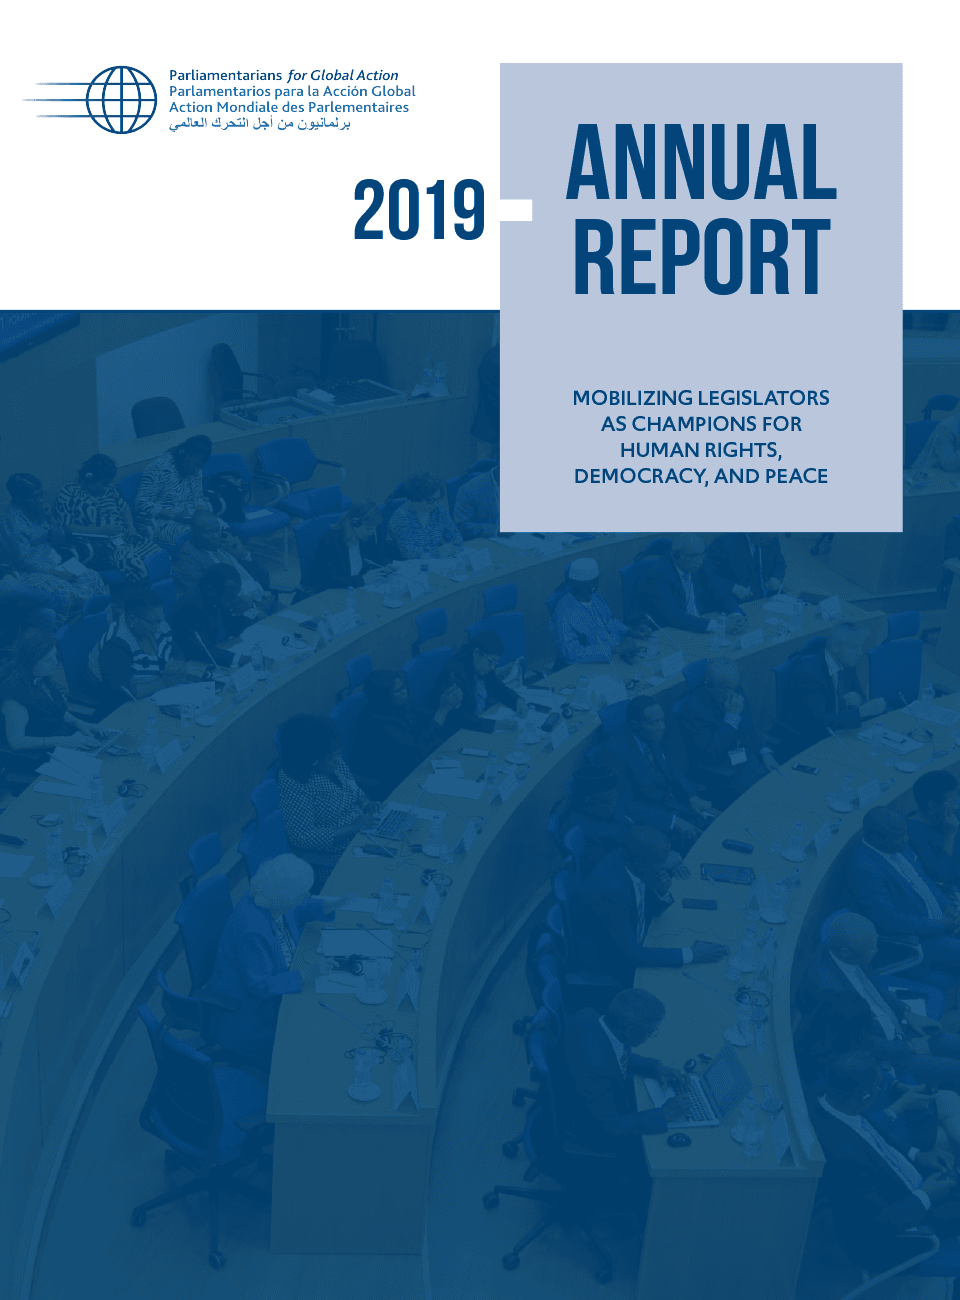 PGA Annual Report 2019